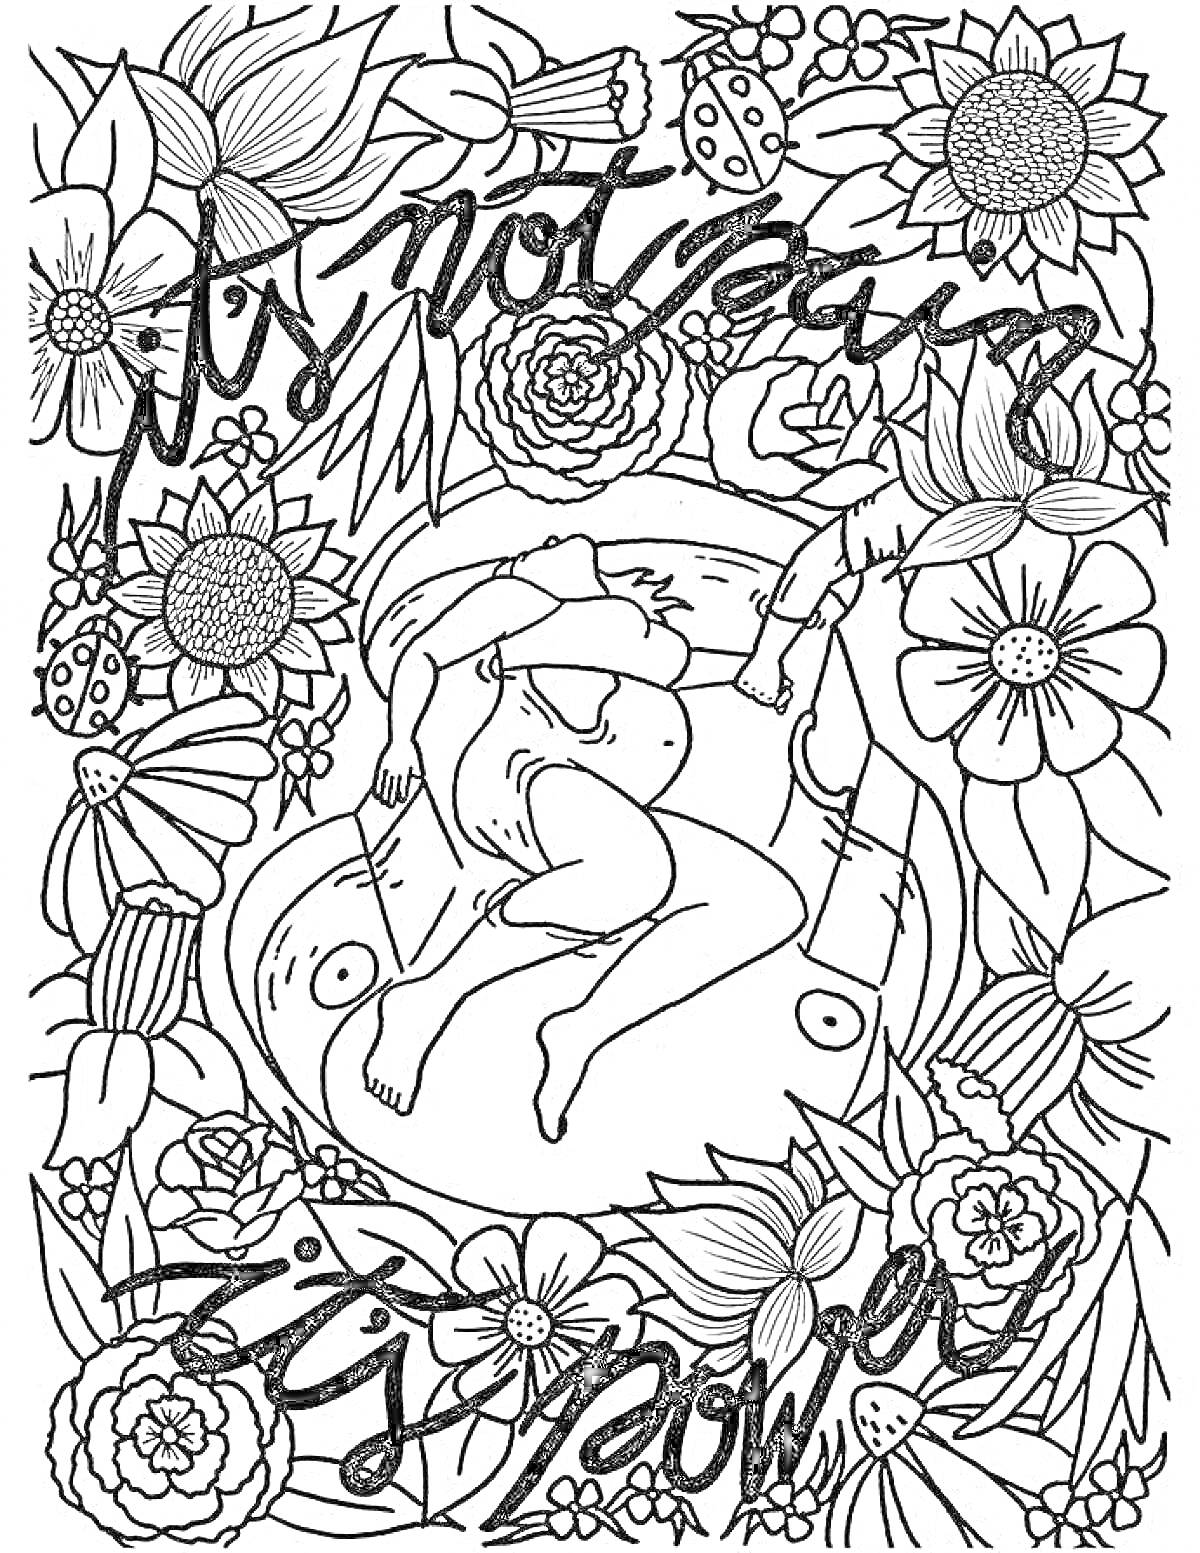 Беременная женщина, окружённая цветами, с текстом 